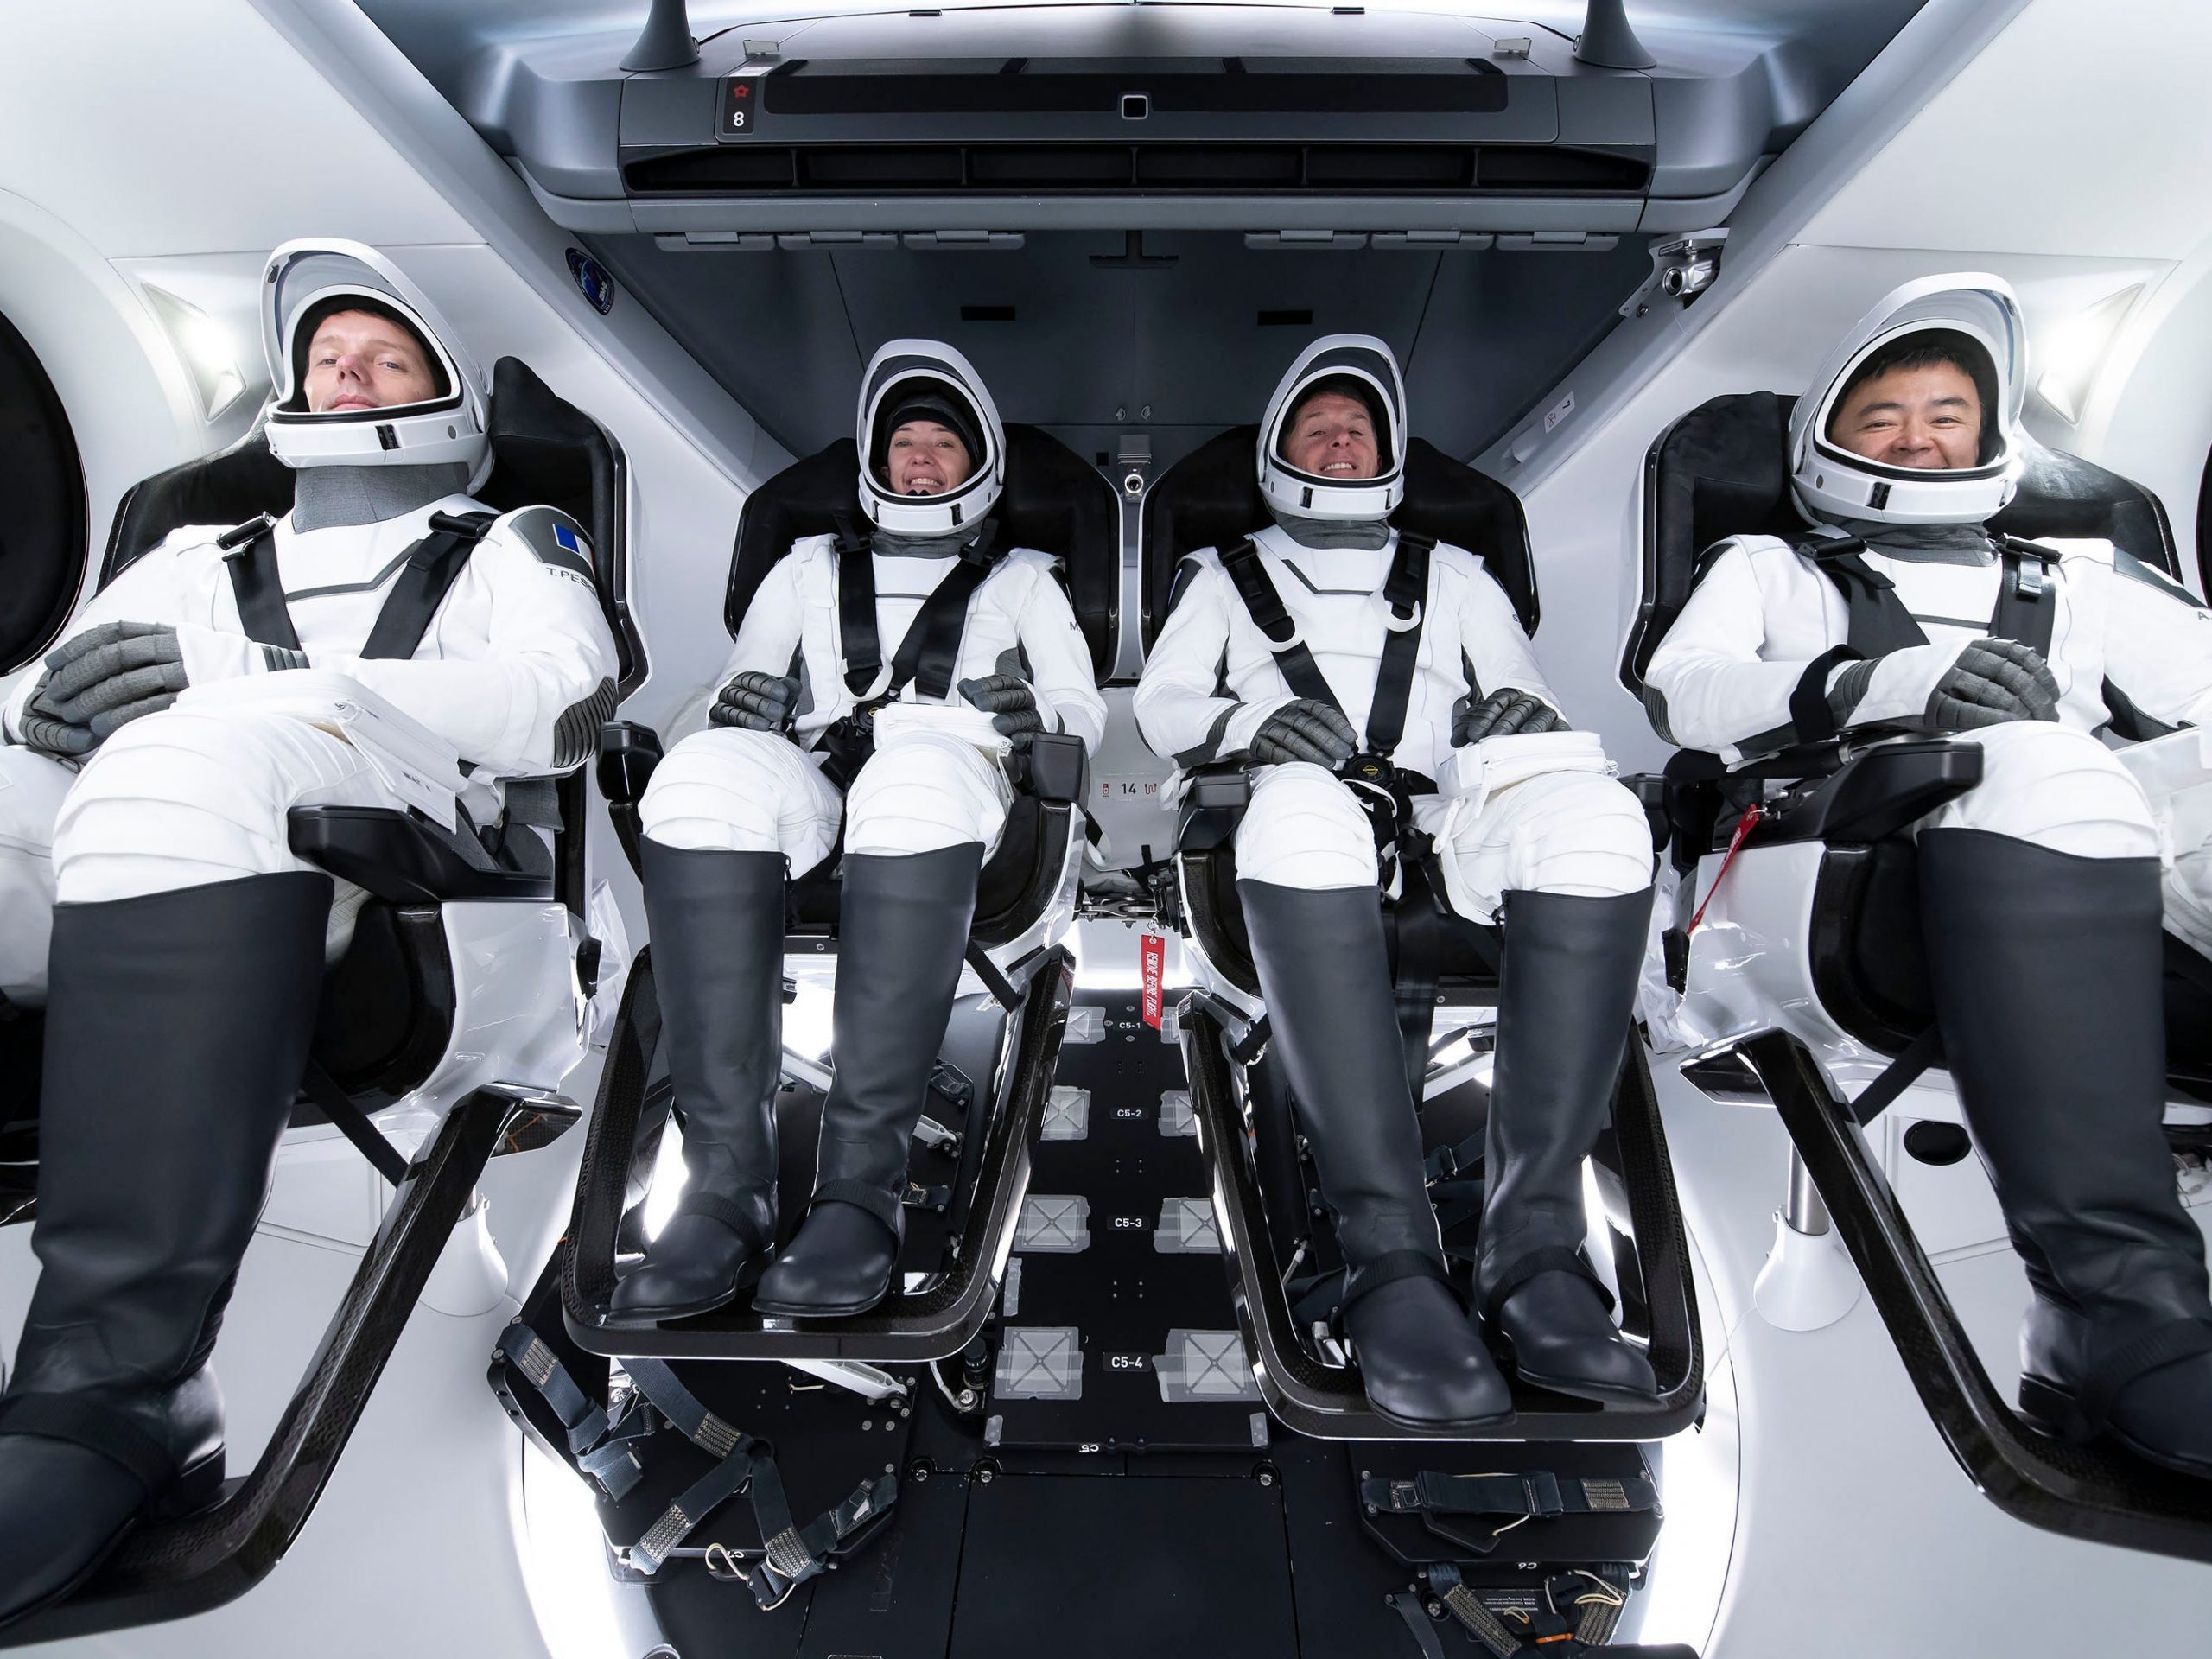 crew 2 astronauts crew dragon spaceship